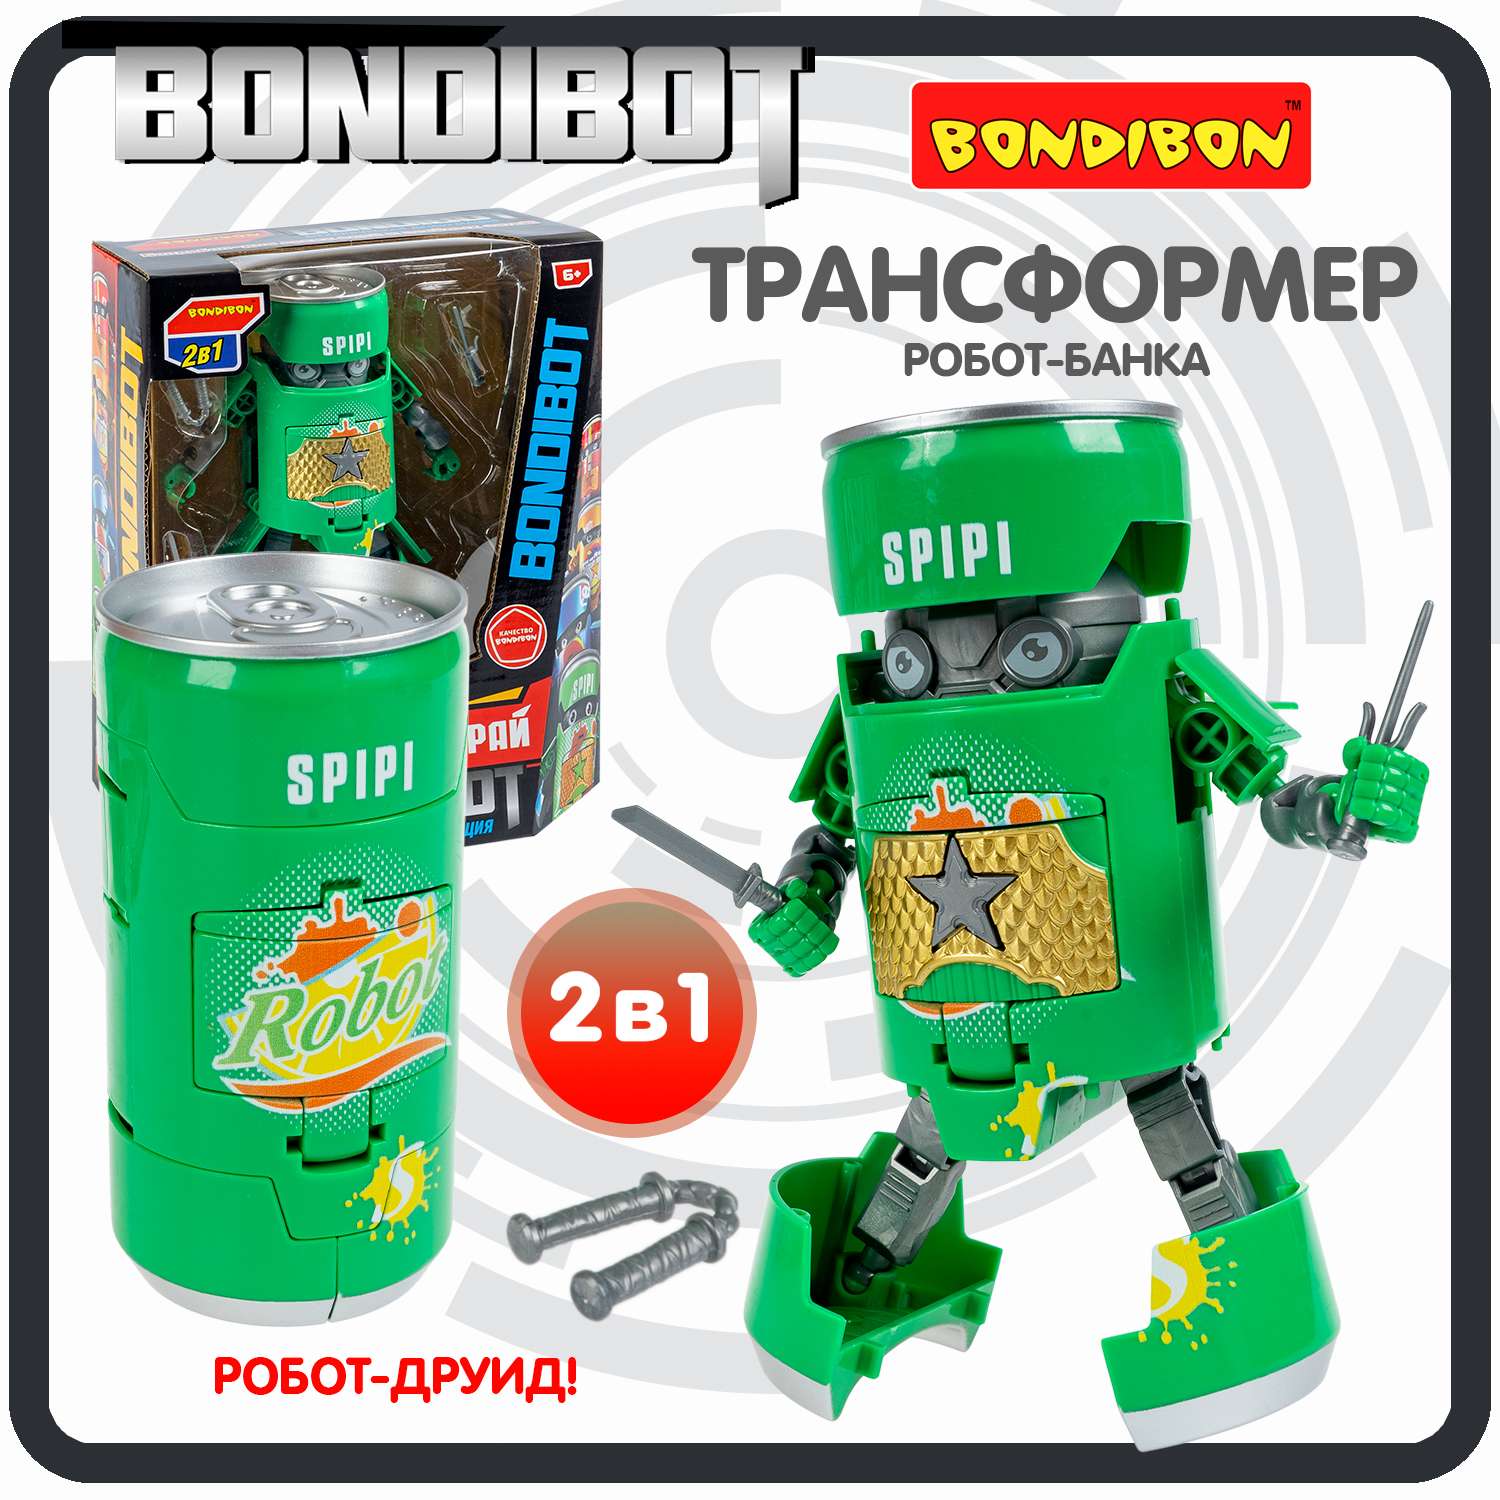 Трансформер BONDIBON BONDIBOT 2 в 1 банка - робот Самурай с оружием зелёного цвета - фото 1